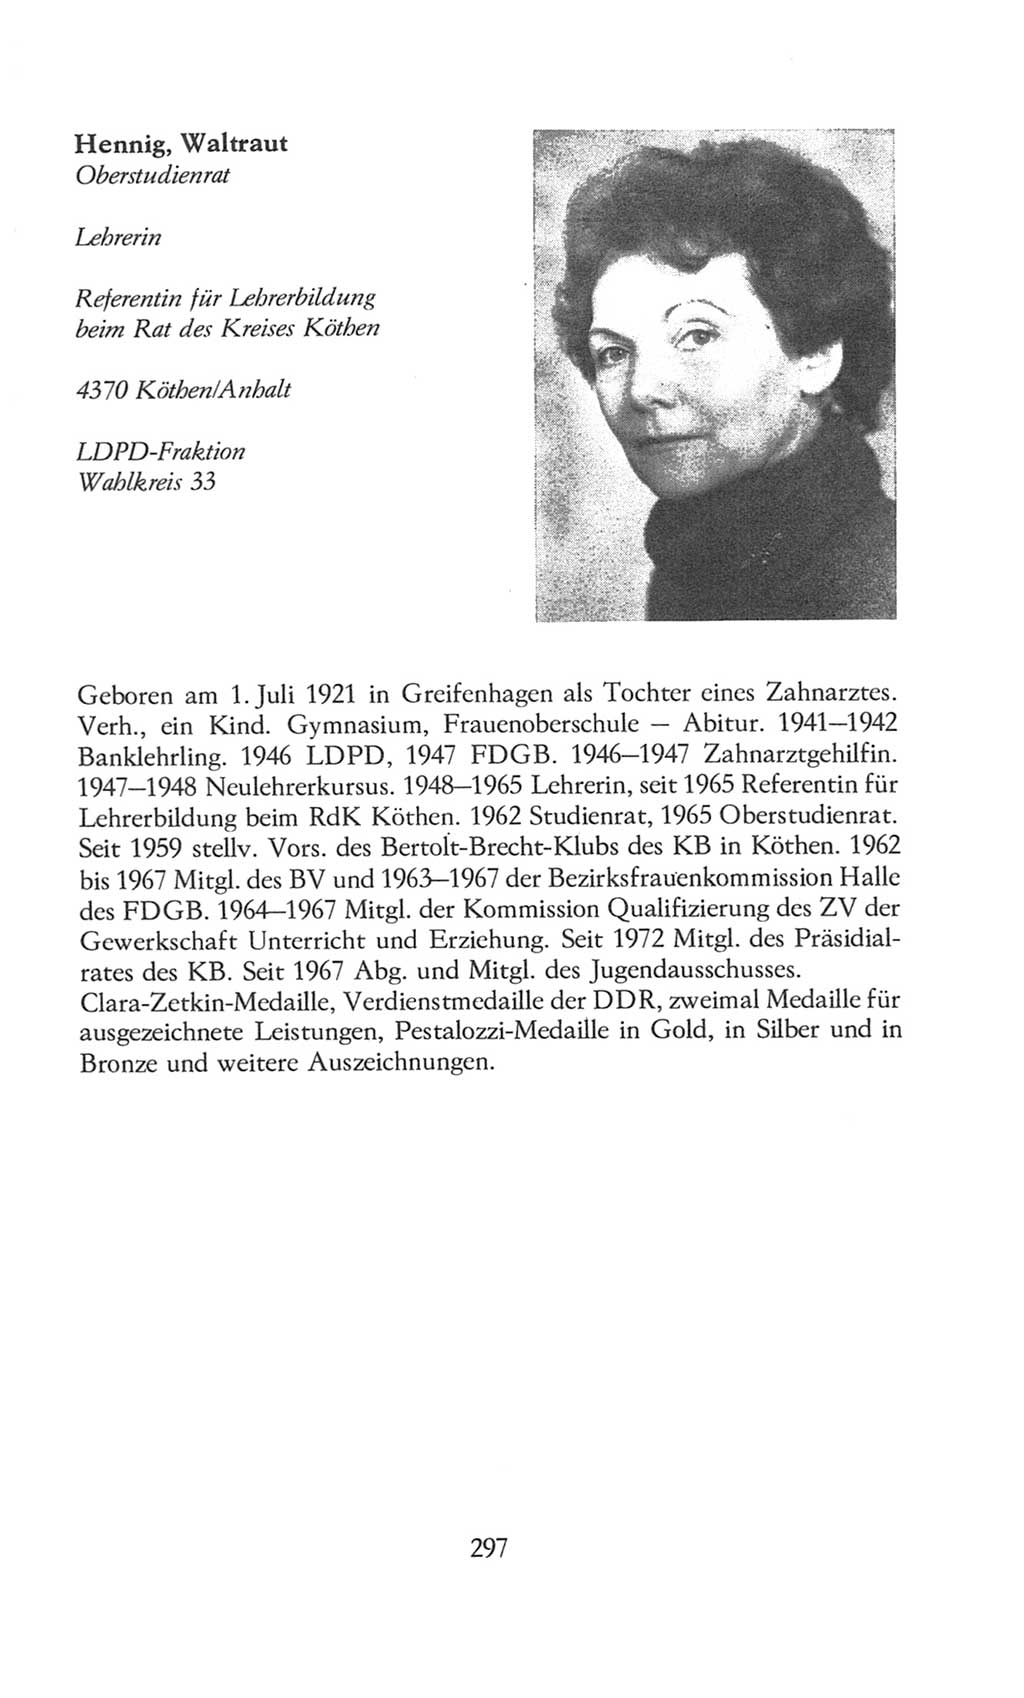 Volkskammer (VK) der Deutschen Demokratischen Republik (DDR), 8. Wahlperiode 1981-1986, Seite 297 (VK. DDR 8. WP. 1981-1986, S. 297)